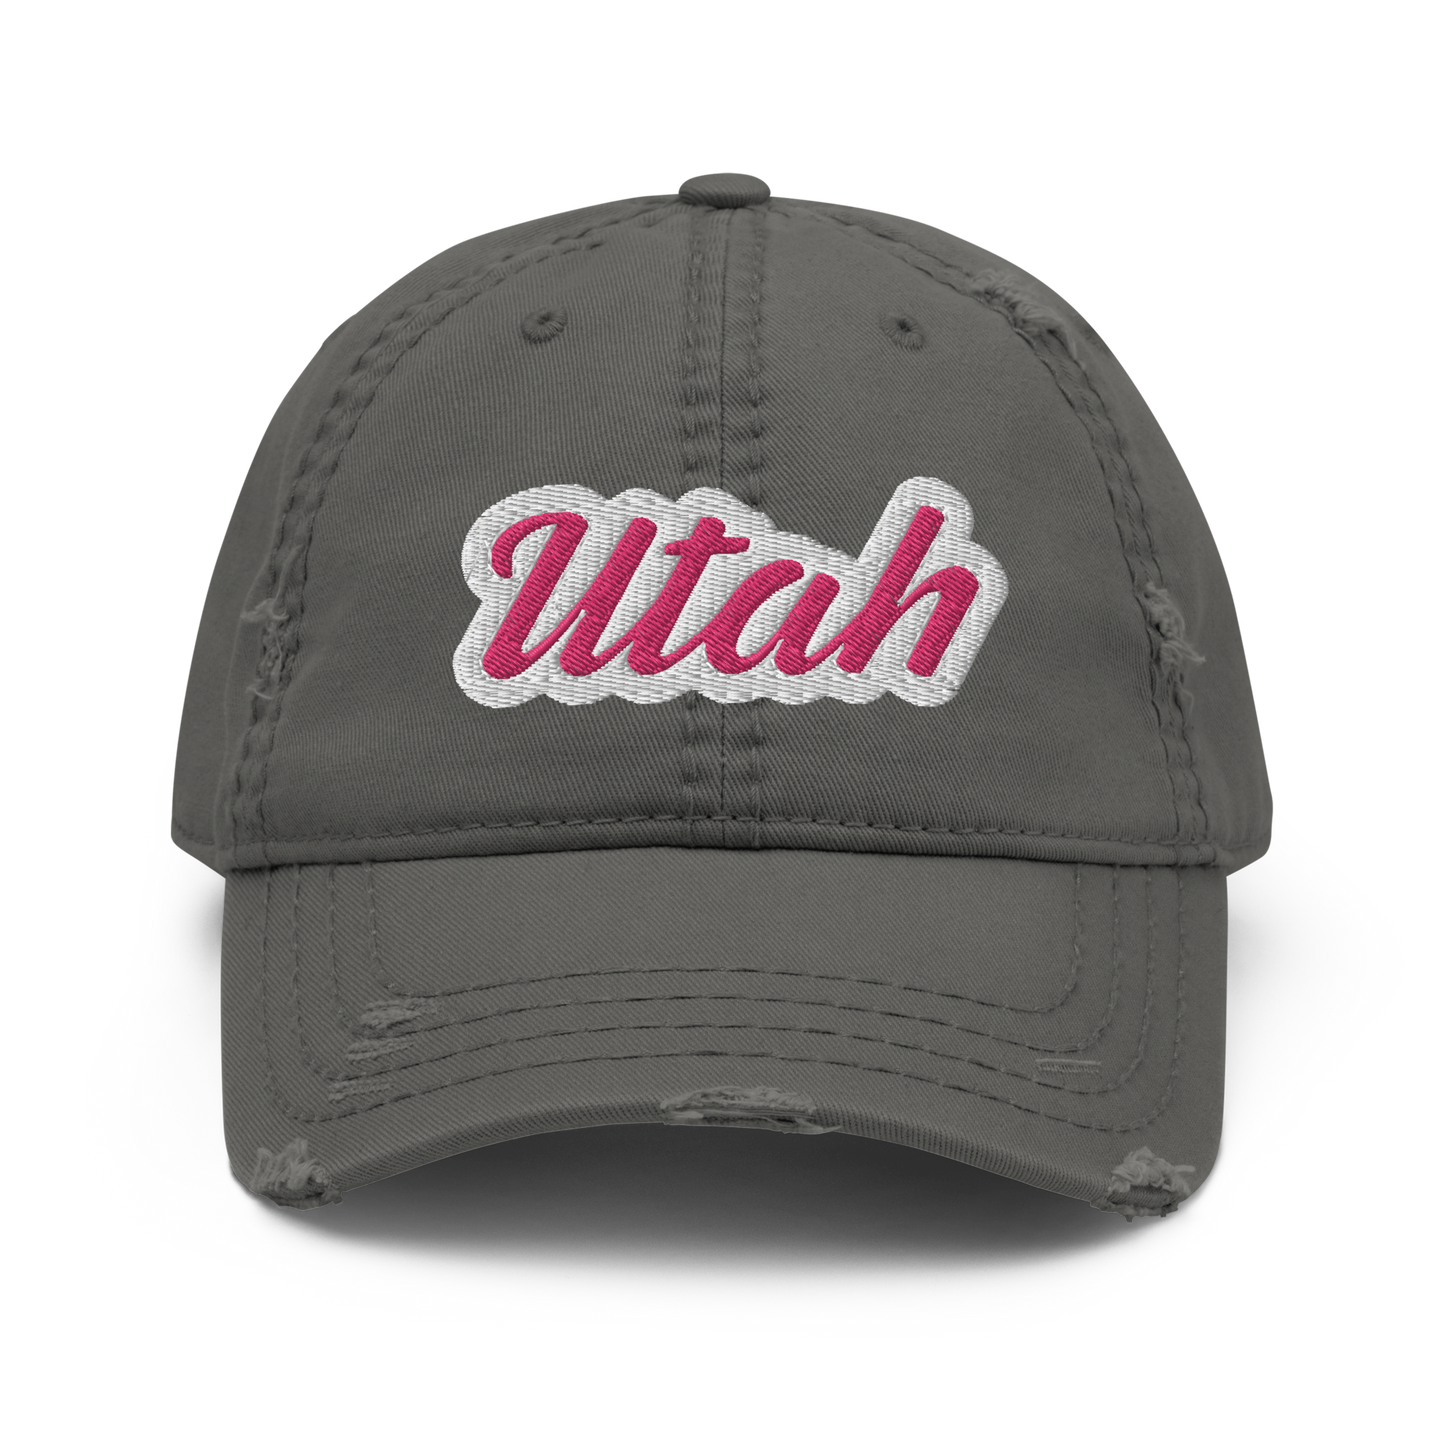 Utah Distressed Hat